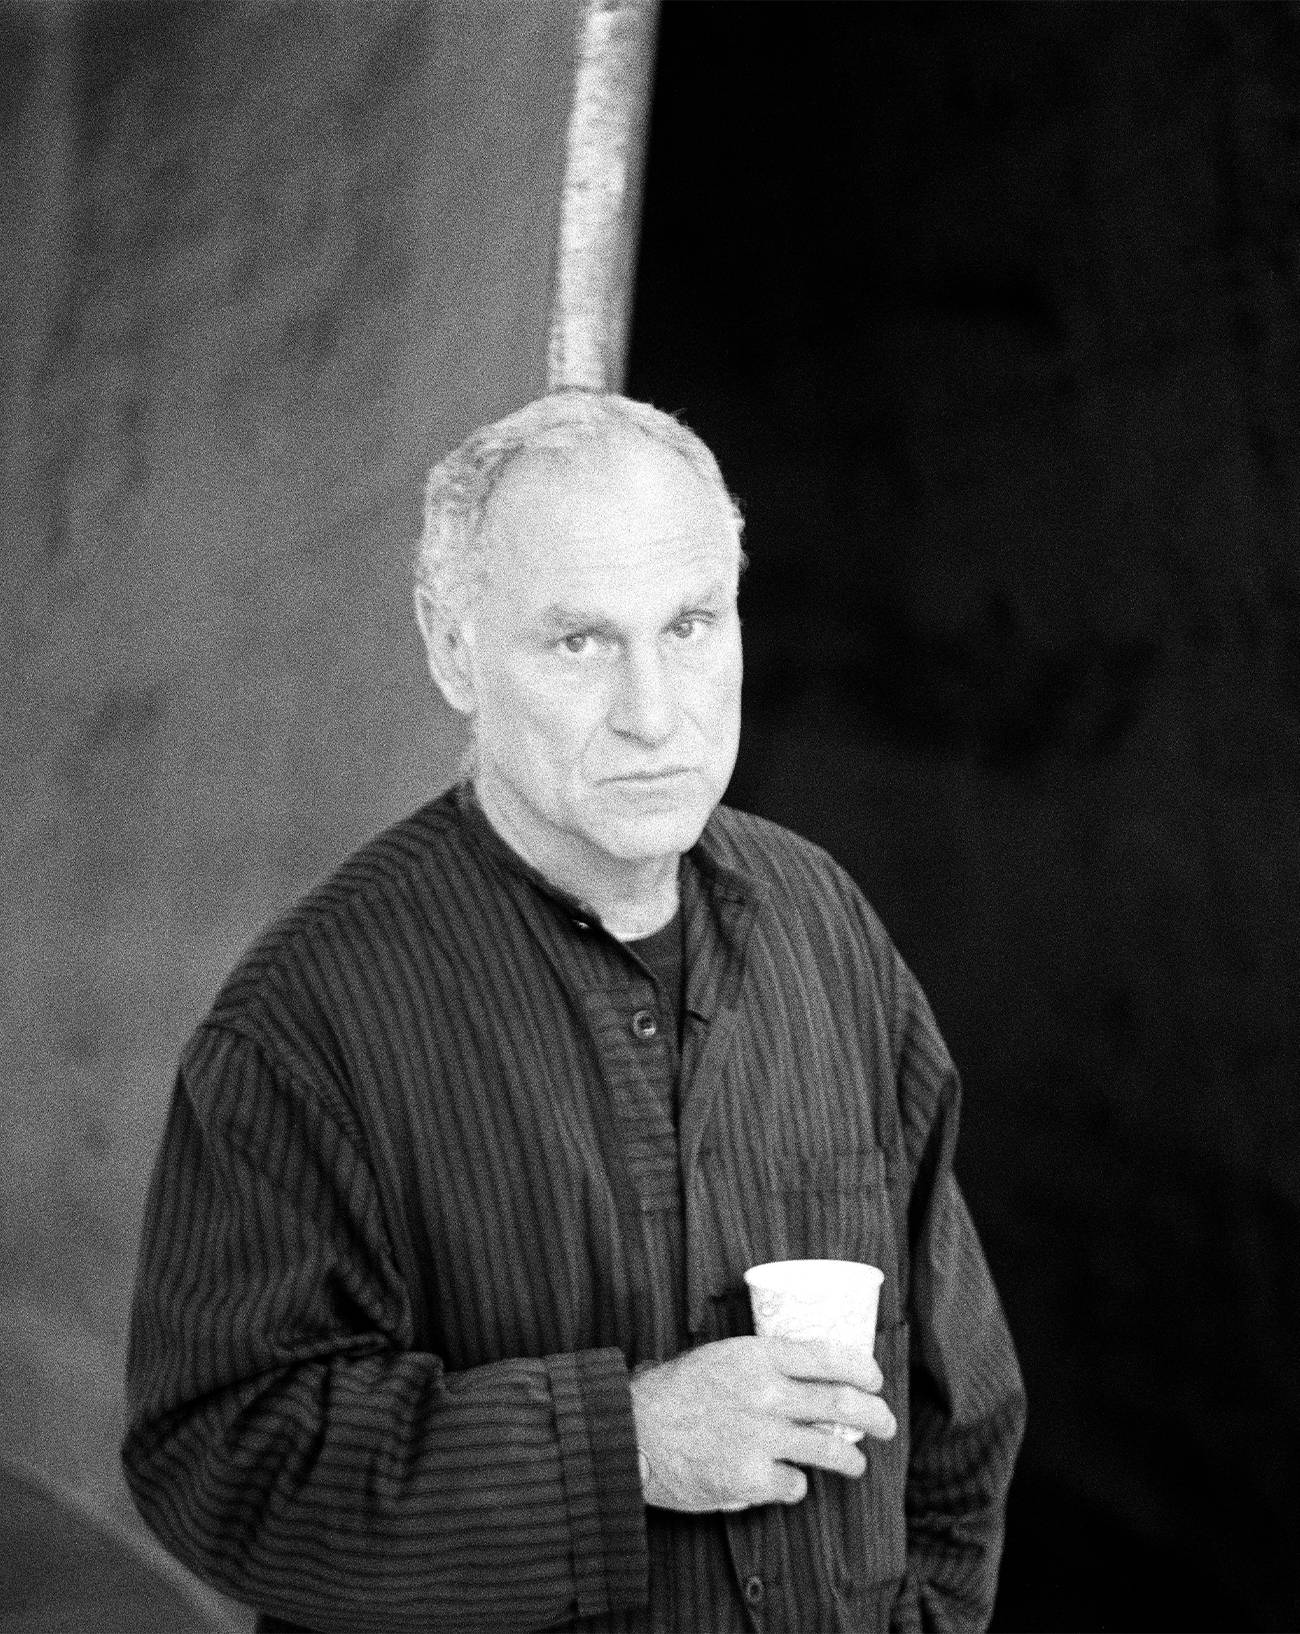 Disparition de Richard Serra, l'artiste qui a transformé la sculpture en architecture